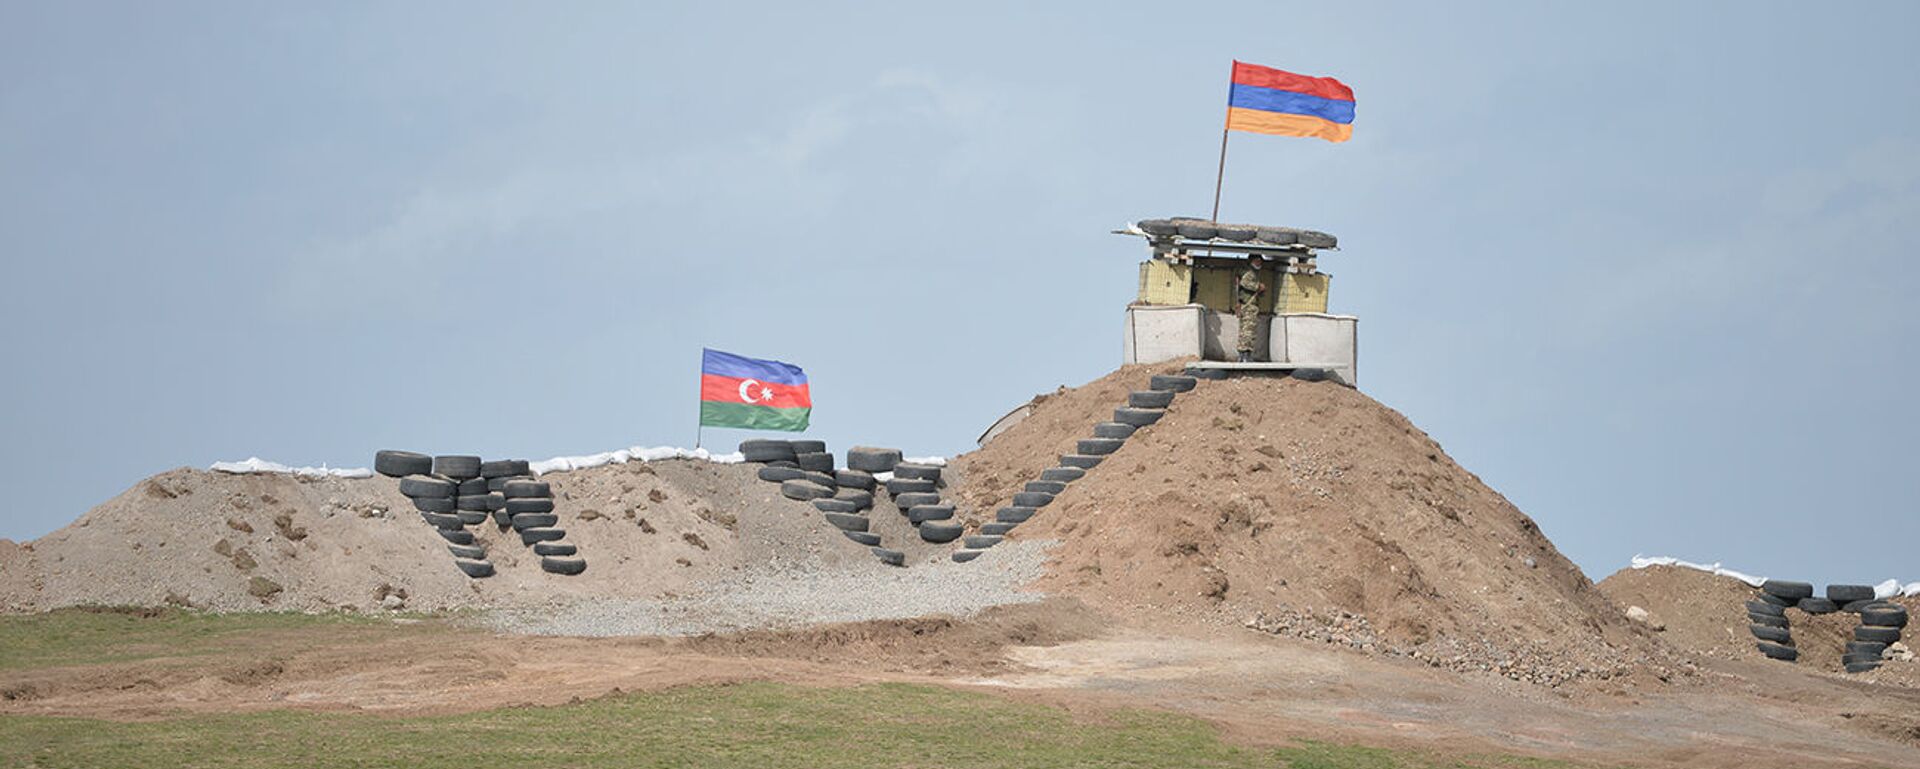 Военные посты на армянсо-азербайджанской границе - Sputnik Արմենիա, 1920, 07.06.2021